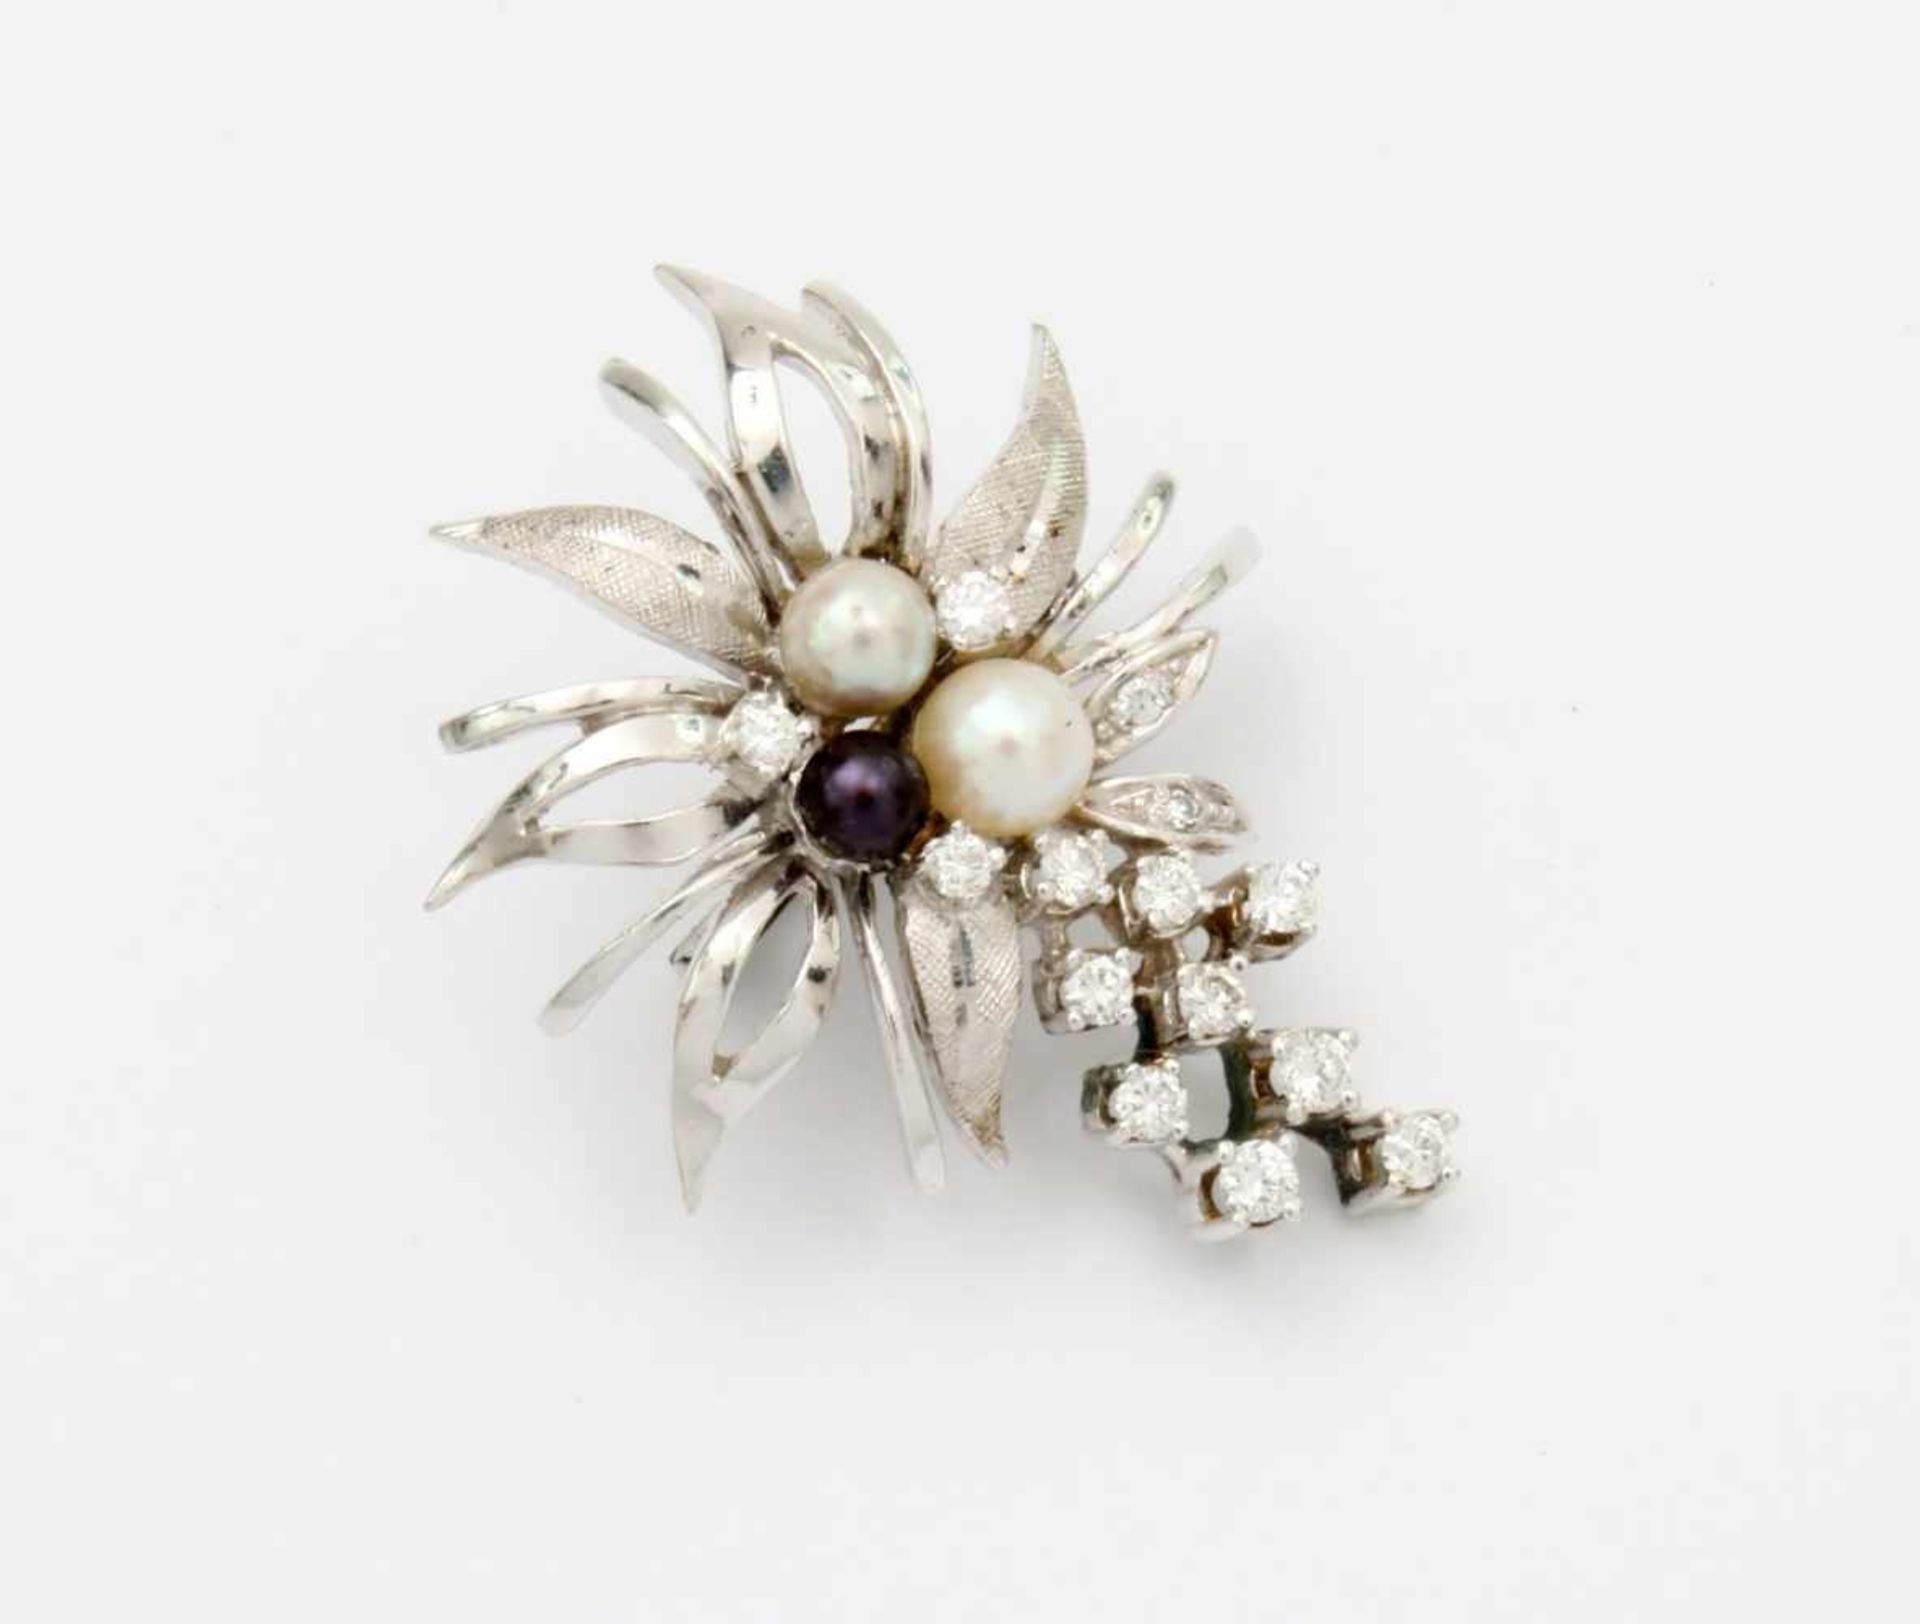 Brillantbrosche mit Perlen WG 585 mit 3 Perlen, 15 Brillanten, 0,41 ct. Gewicht: 7,8 gr. - Bild 2 aus 4